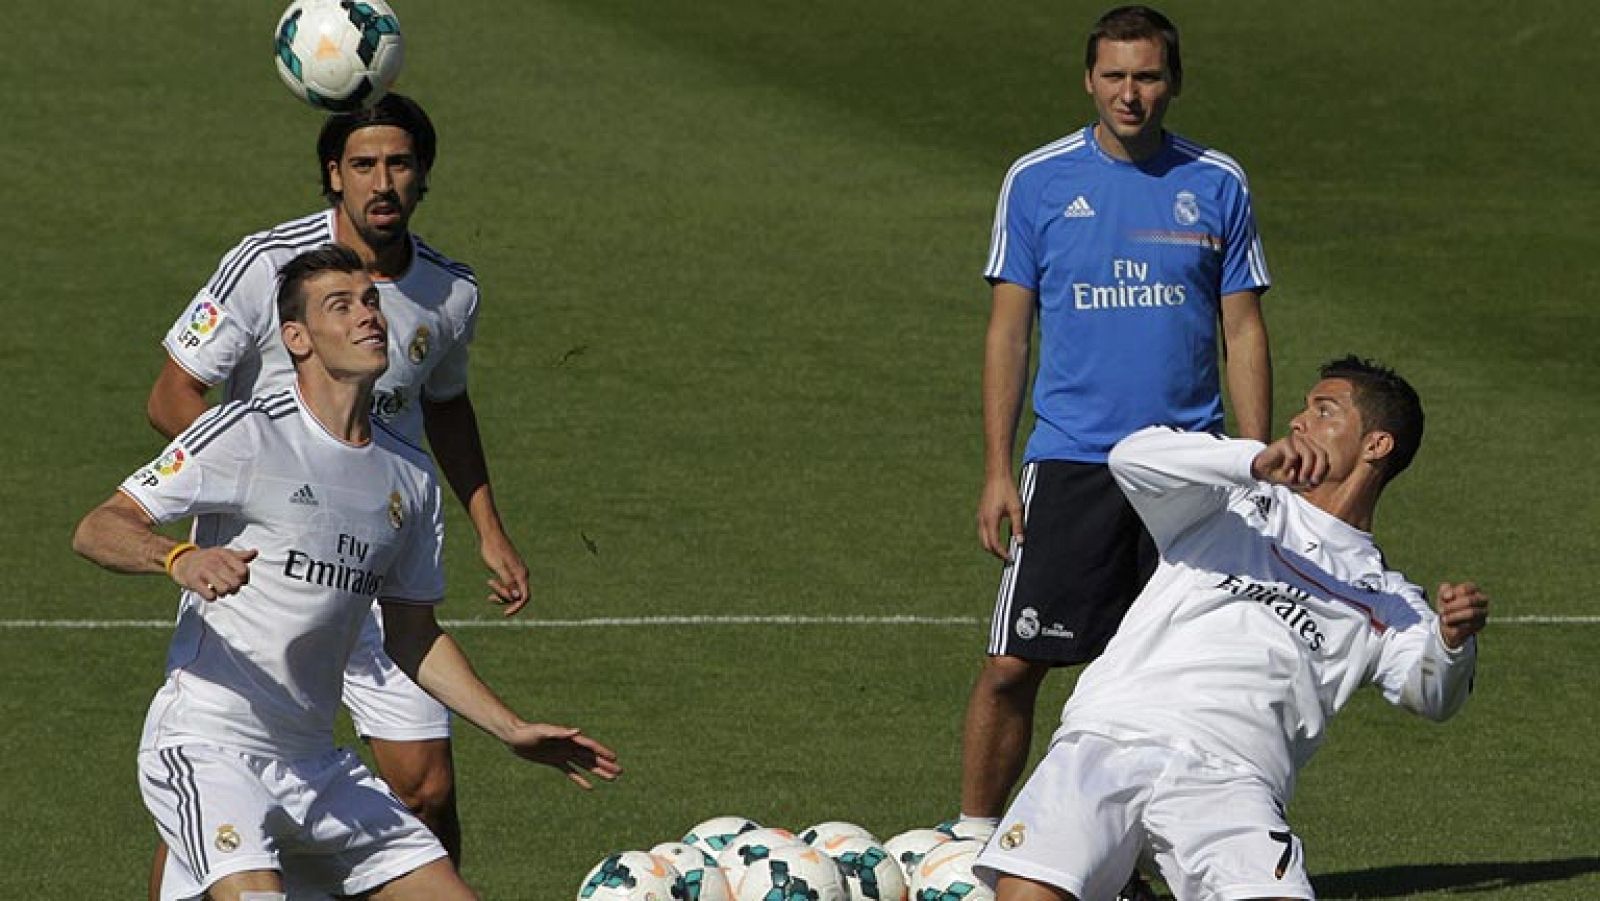 El Madrid de Bale, a por todas en El Madrigal